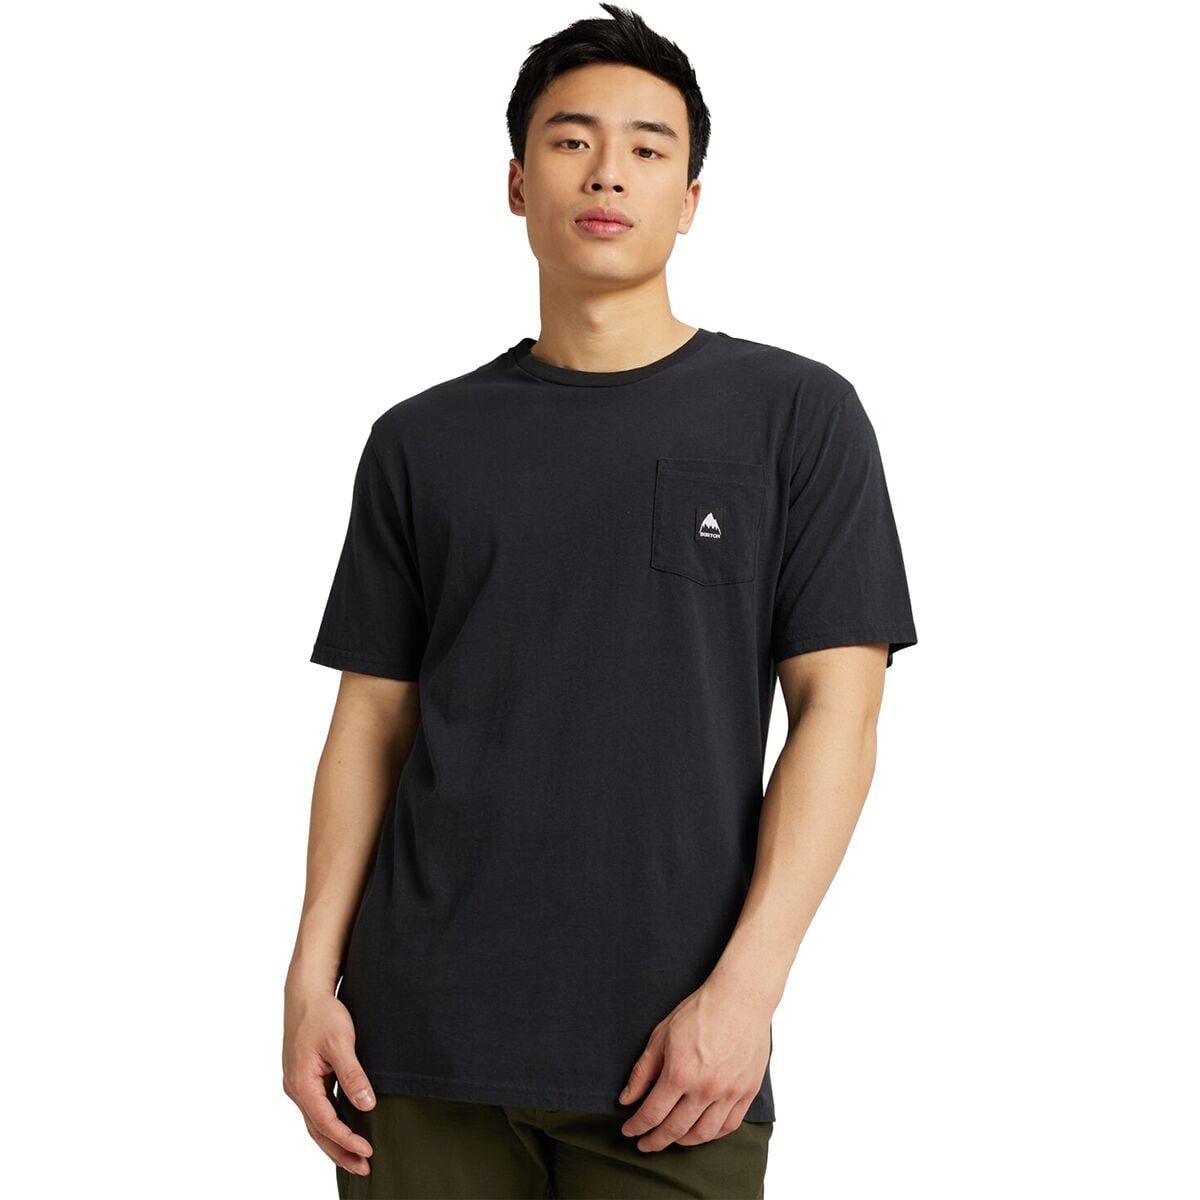 Colfax Short-Sleeve T-Shirt - Men